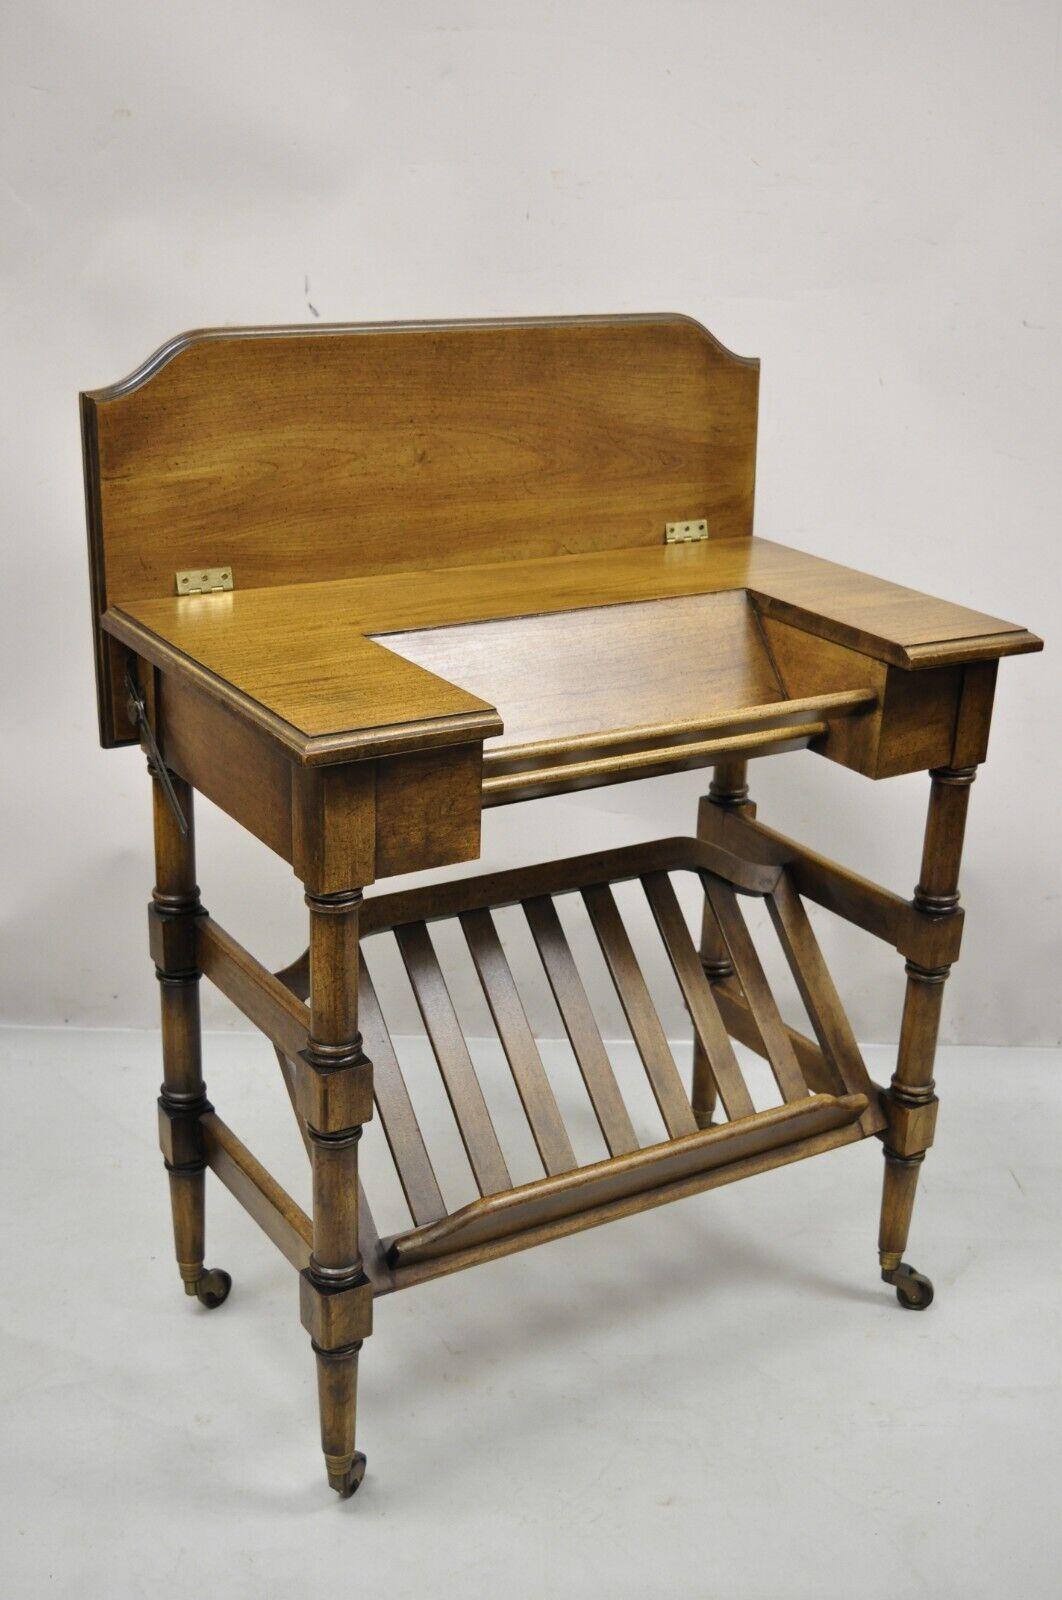 Vintage Brandt flip top Piano style small wooden writing desk table. L'article est doté de roulettes, d'un couvercle rabattable, d'une étagère inférieure, d'un label d'origine, d'un très bel article vintage, d'une fabrication américaine de qualité,